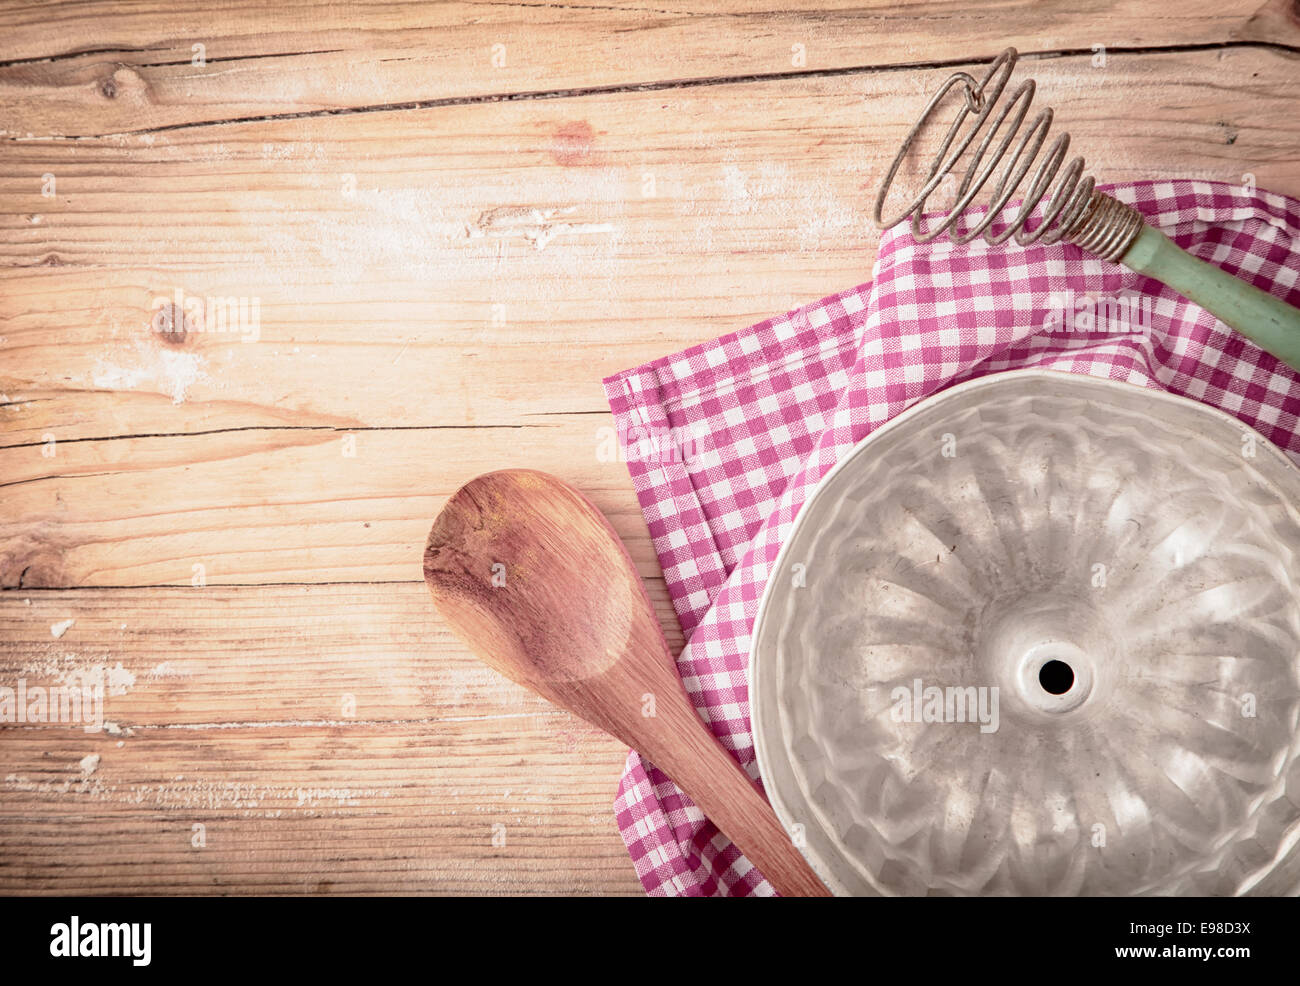 Vecchio metallo circolare stampo da forno per la cottura di una torta ad anello o flan giacente capovolto su un rosso fresco e bianco panno controllato su una tavola in legno rustico, vista aerea Foto Stock